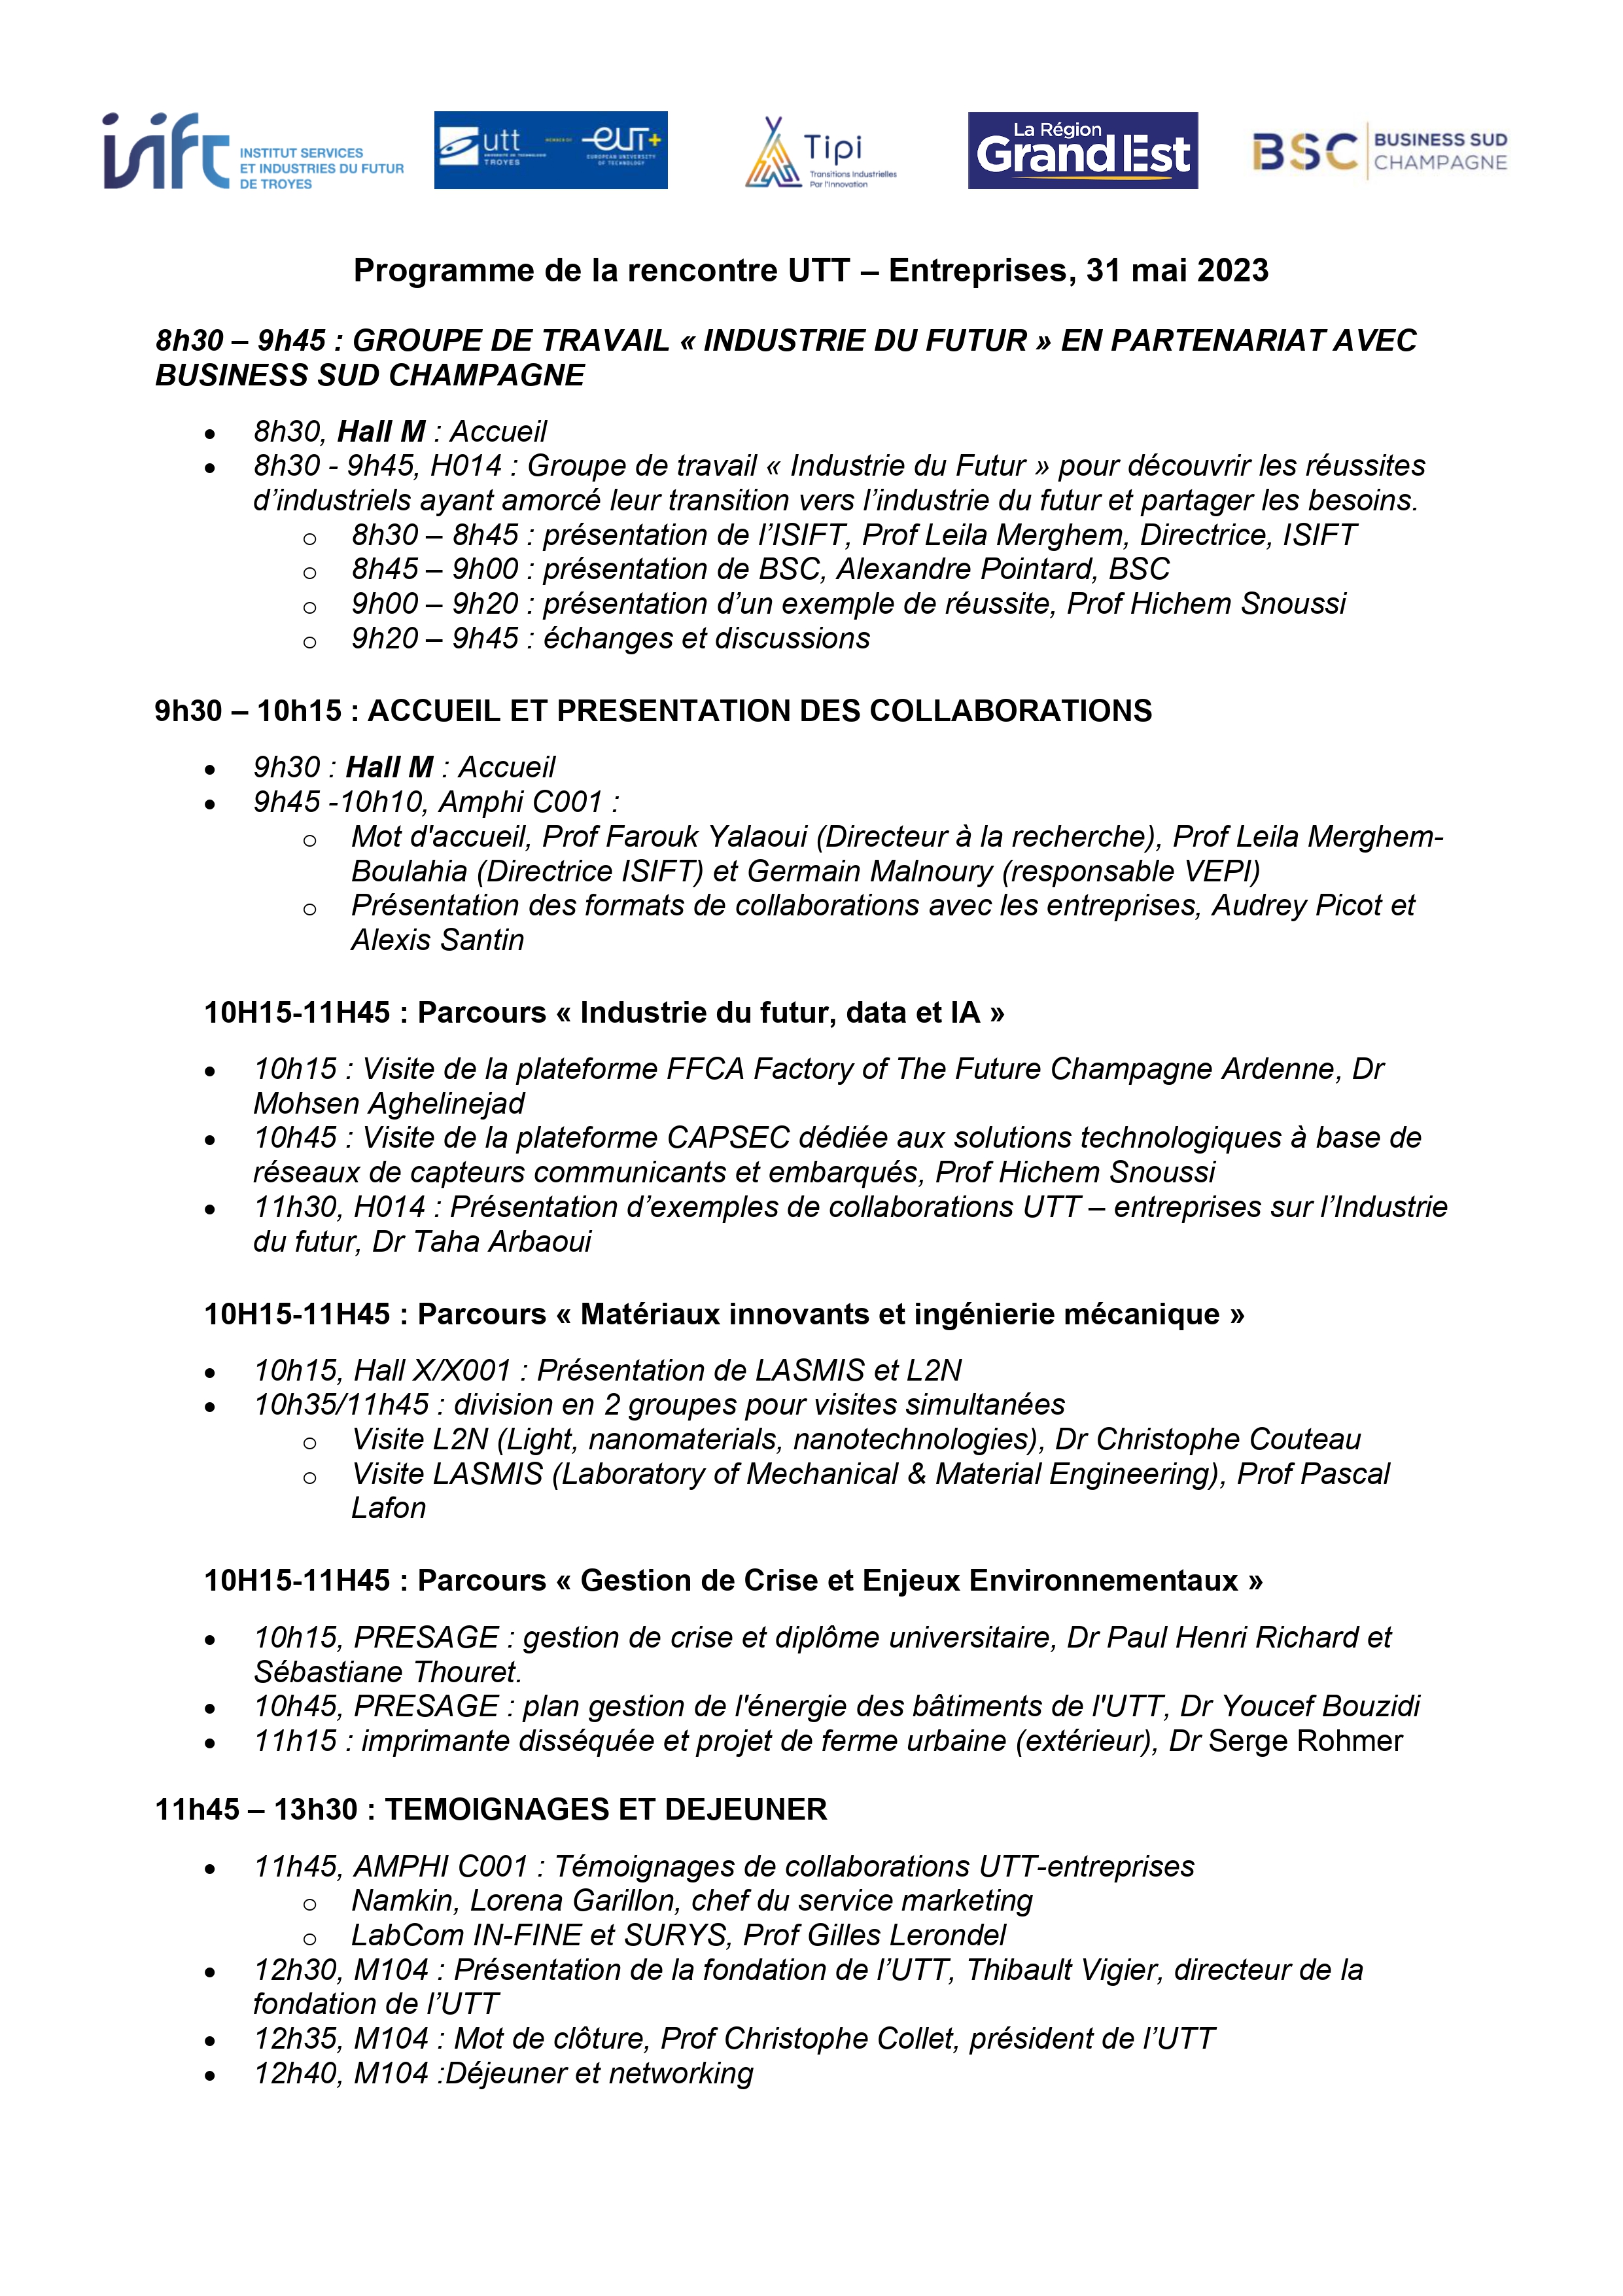 Programme des rencontres UTT-Entreprises du 31 mai 2023